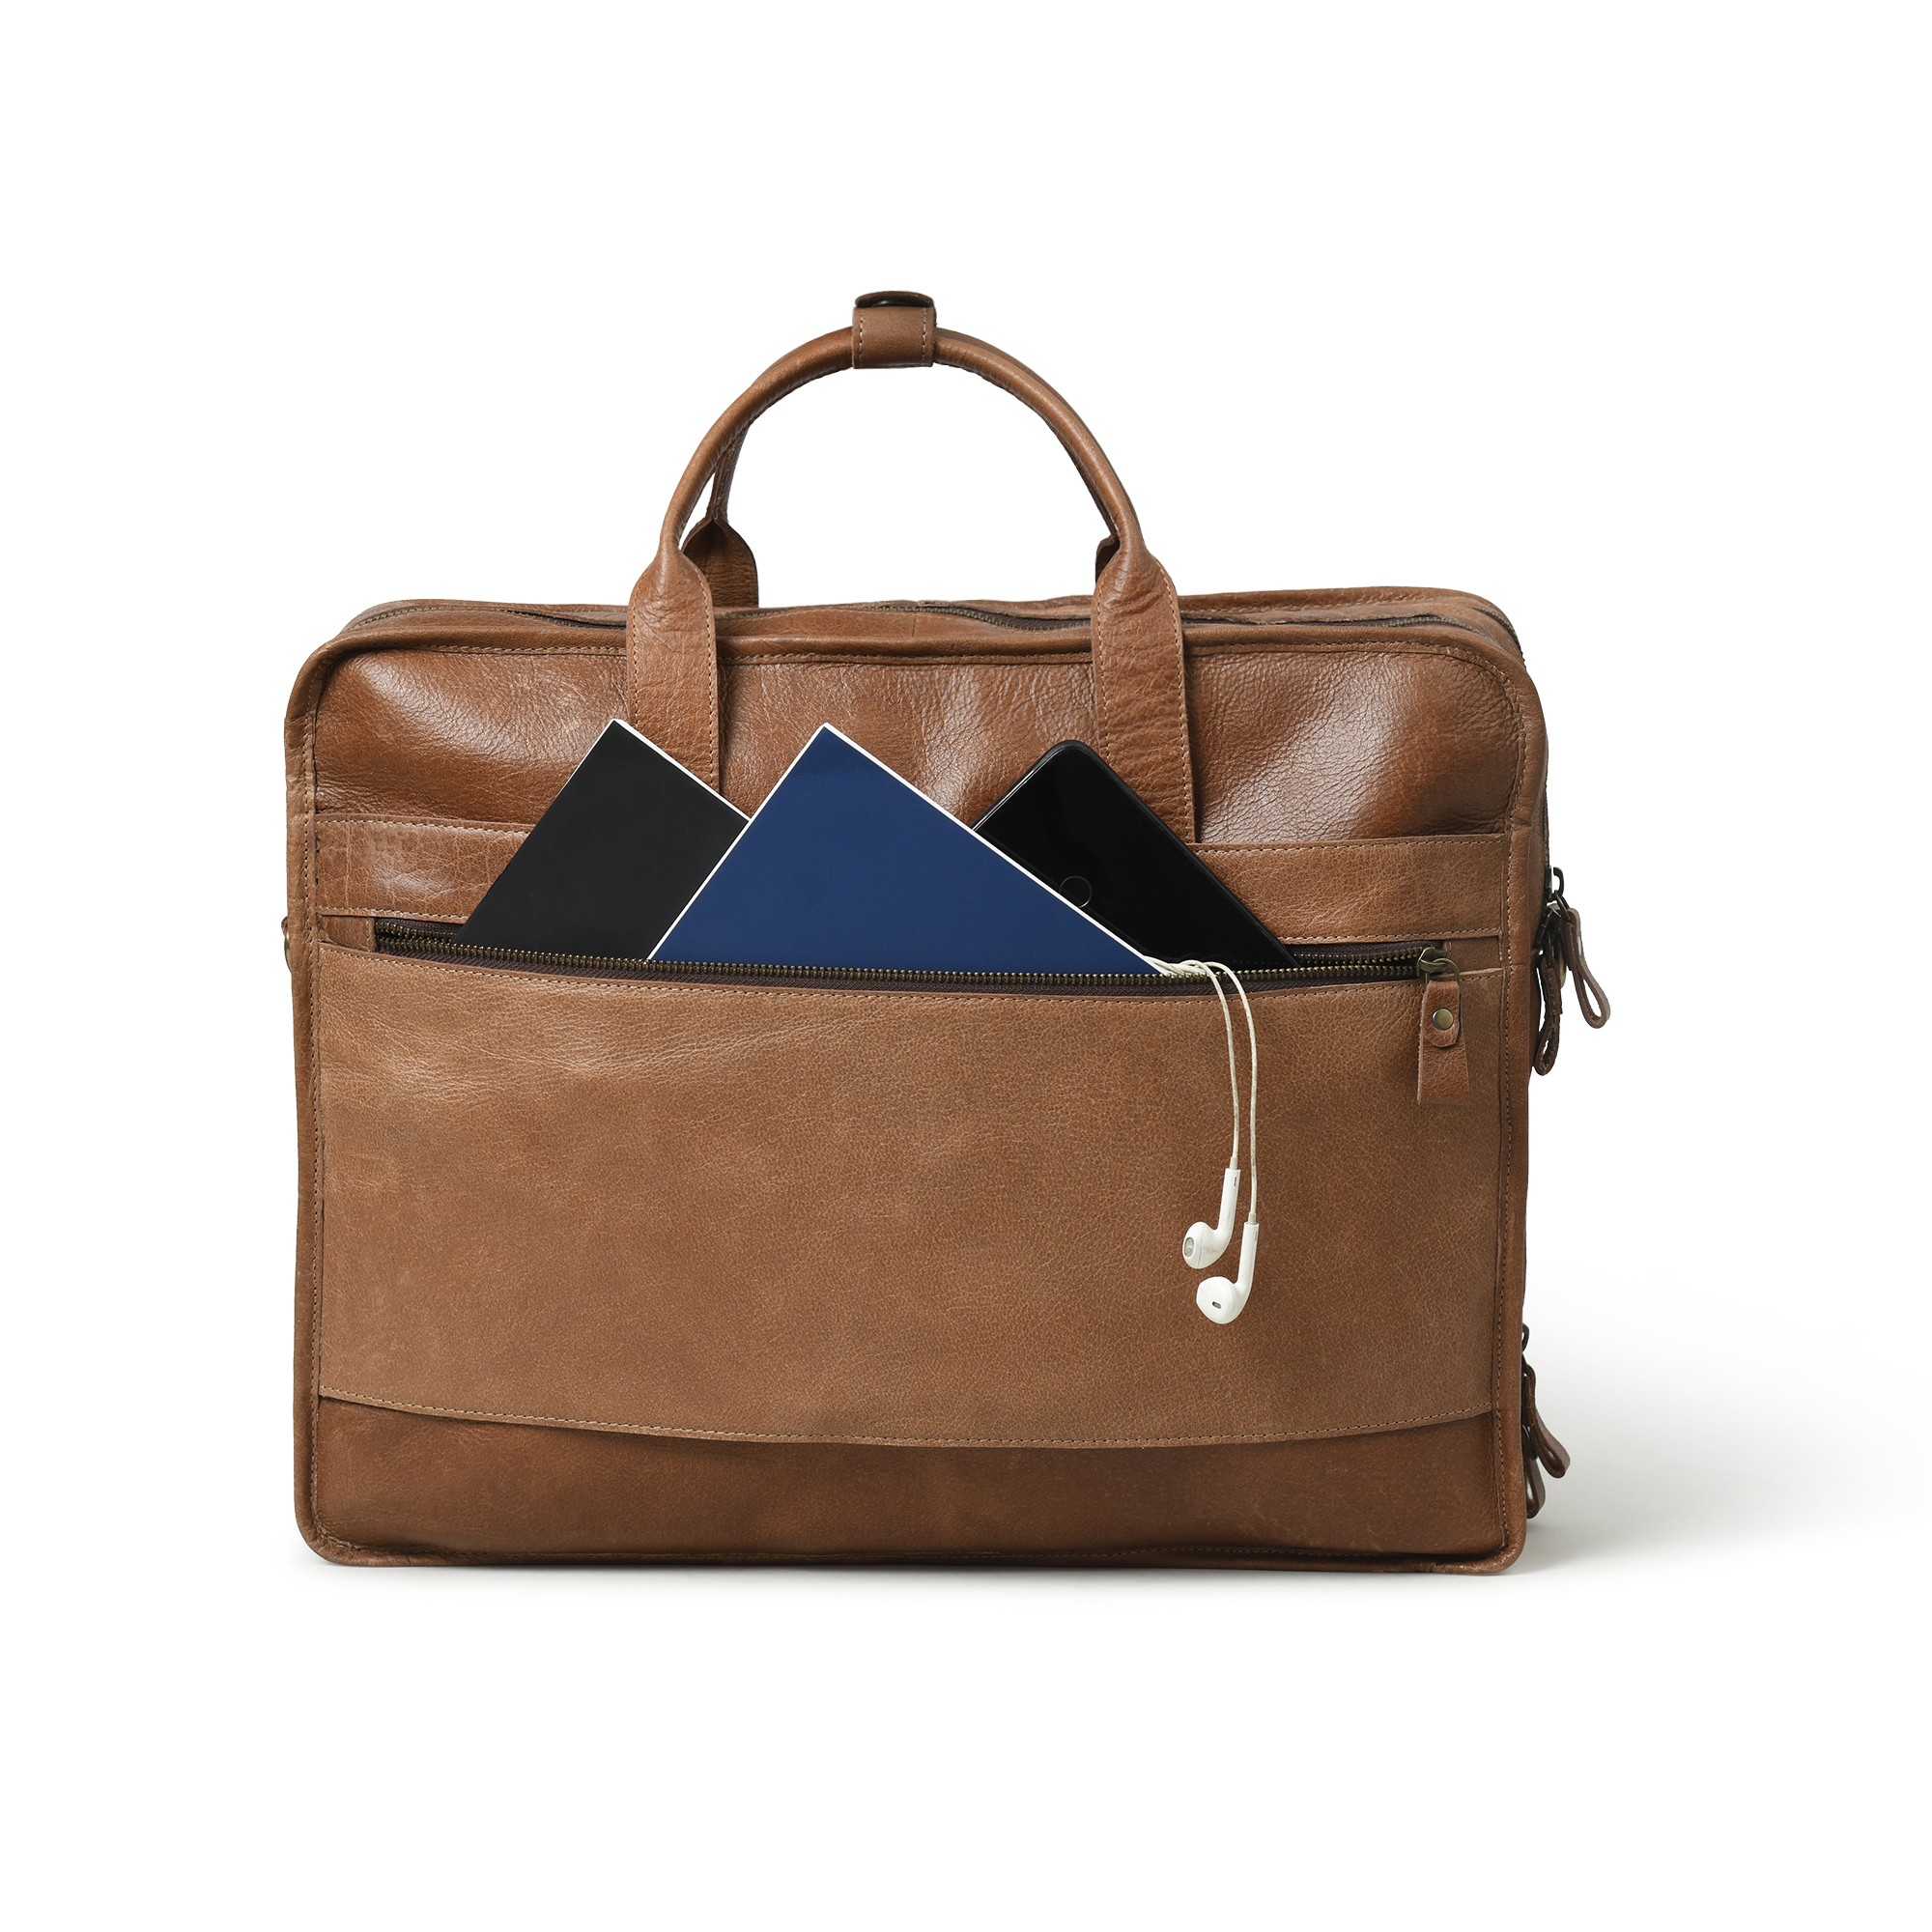 Leather bags for men | Handbags | Sling bags for Women – montexoo